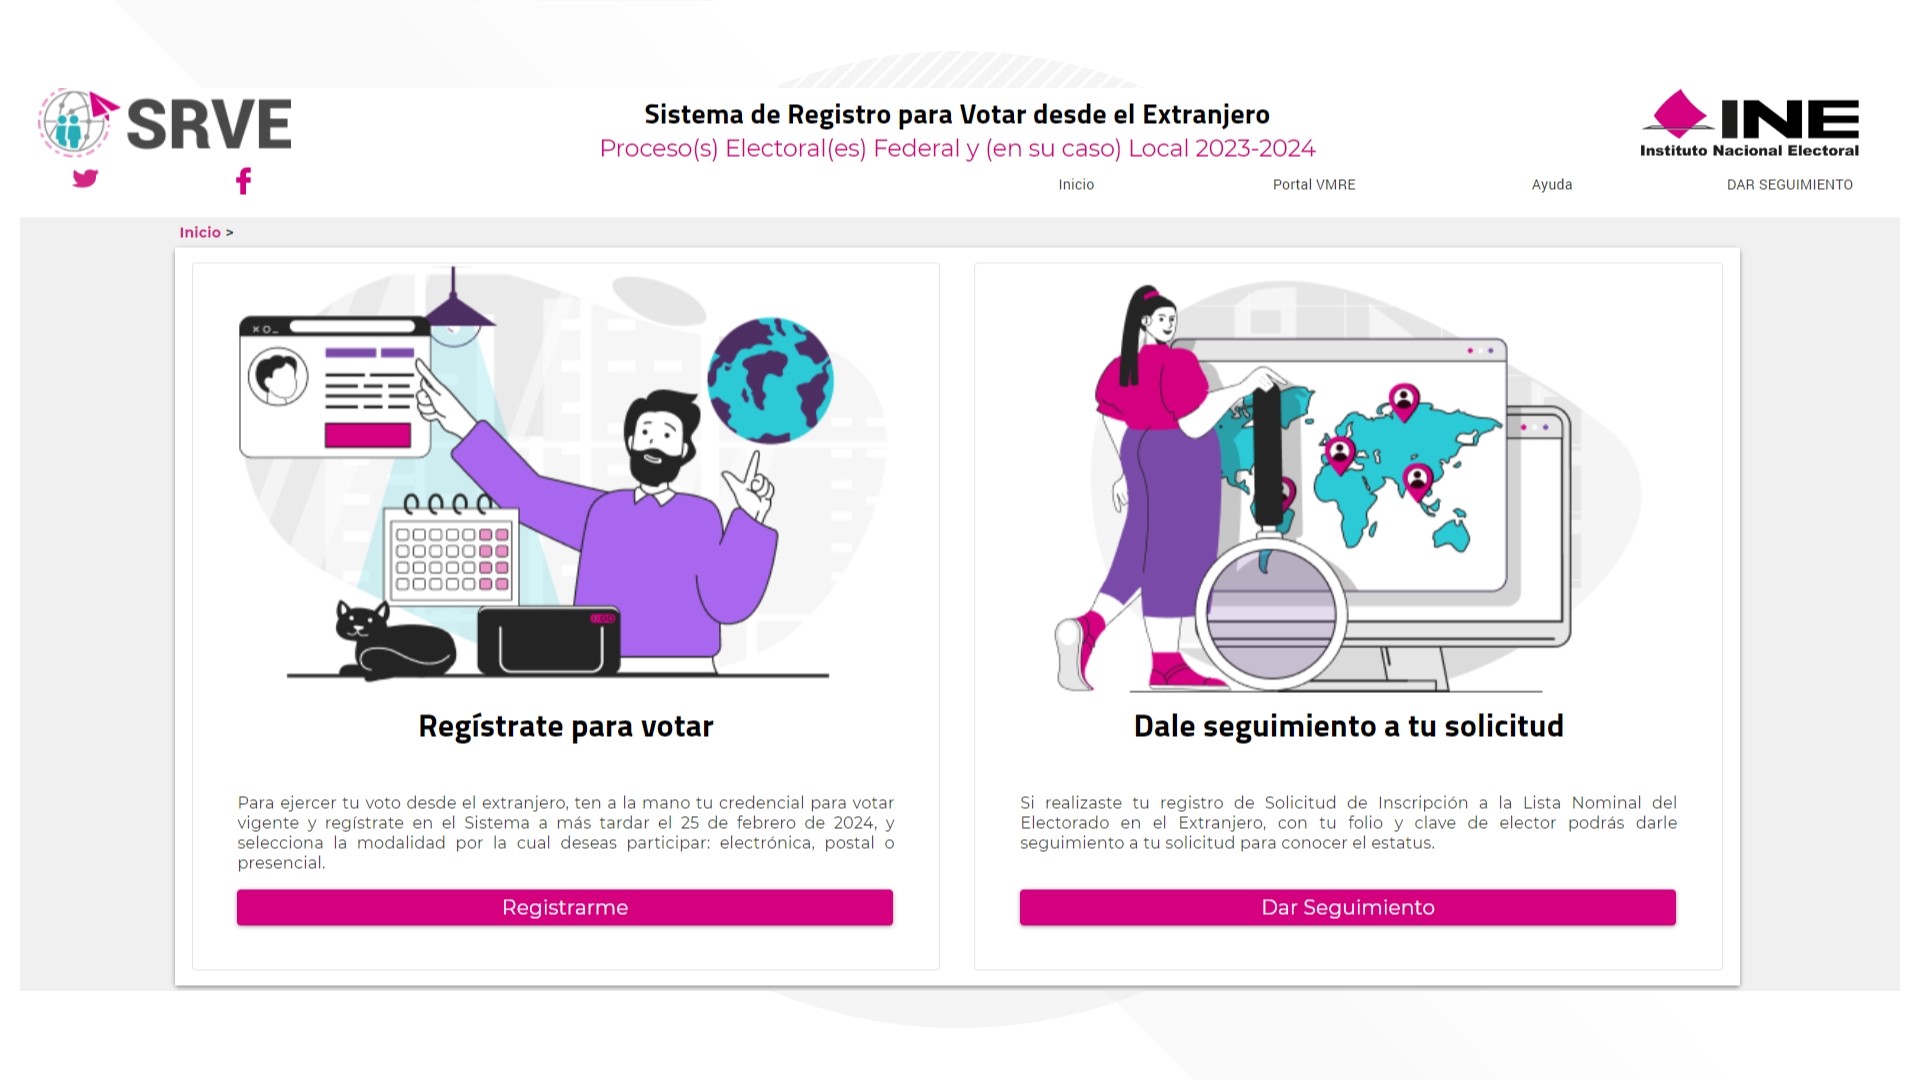 Si ya tiene su credencial de elector vigente y no se ha registrado para votar en México, le decimos cómo hacerlo.